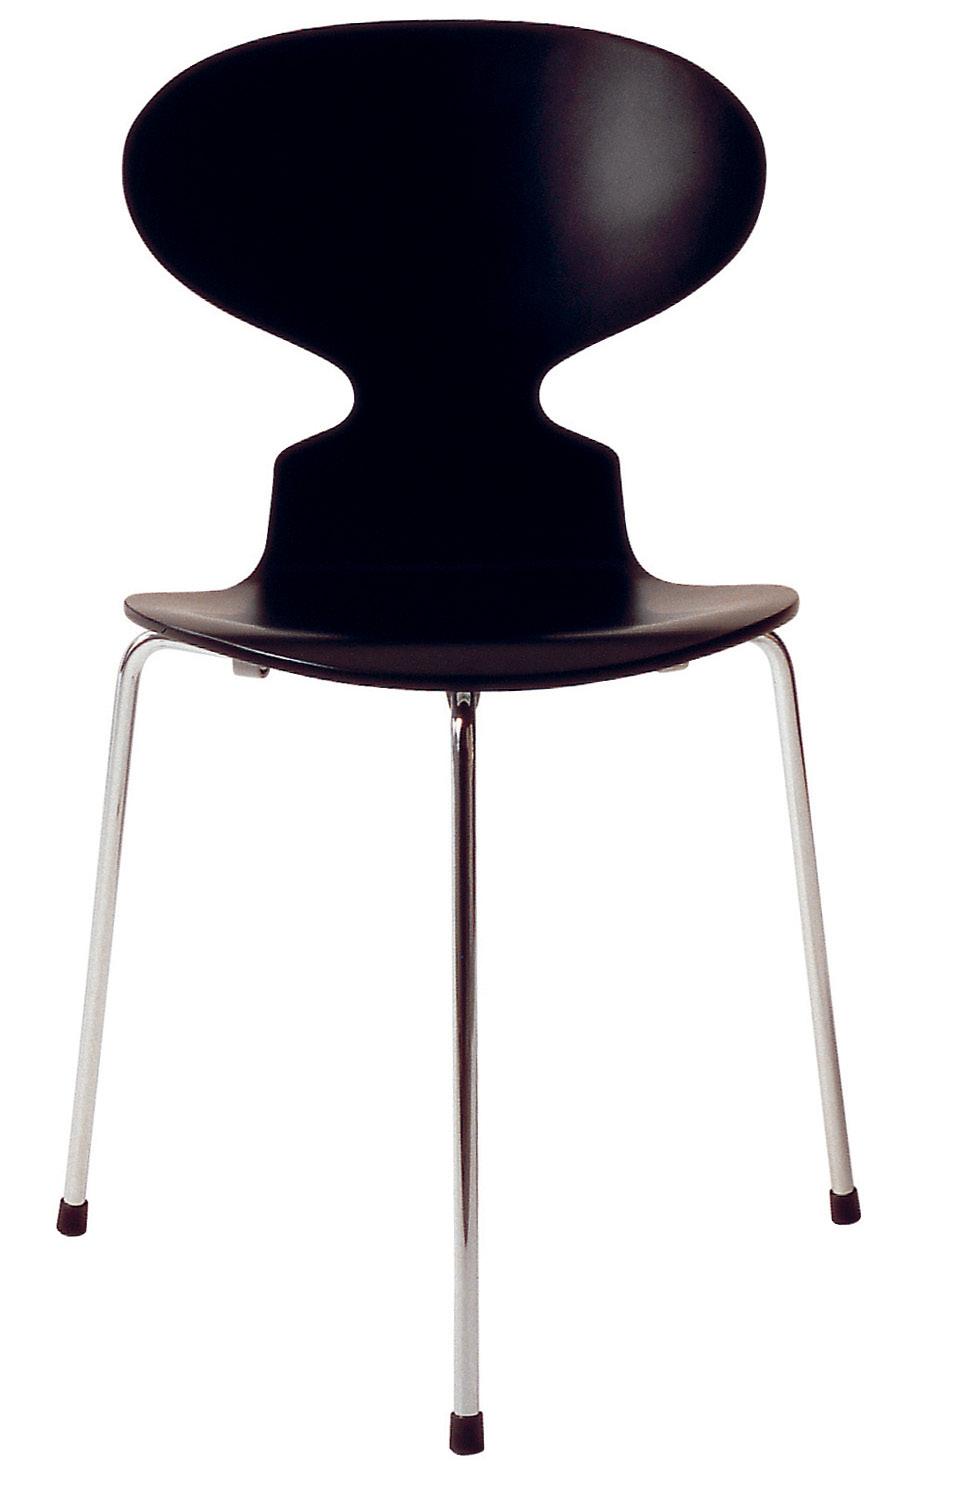 MYRAN Arne Jacobsen designade ursprungligen Myran till personalmatsalen på Novo Nordisk. Idag är Myran en av kollektionens främsta ikoner.